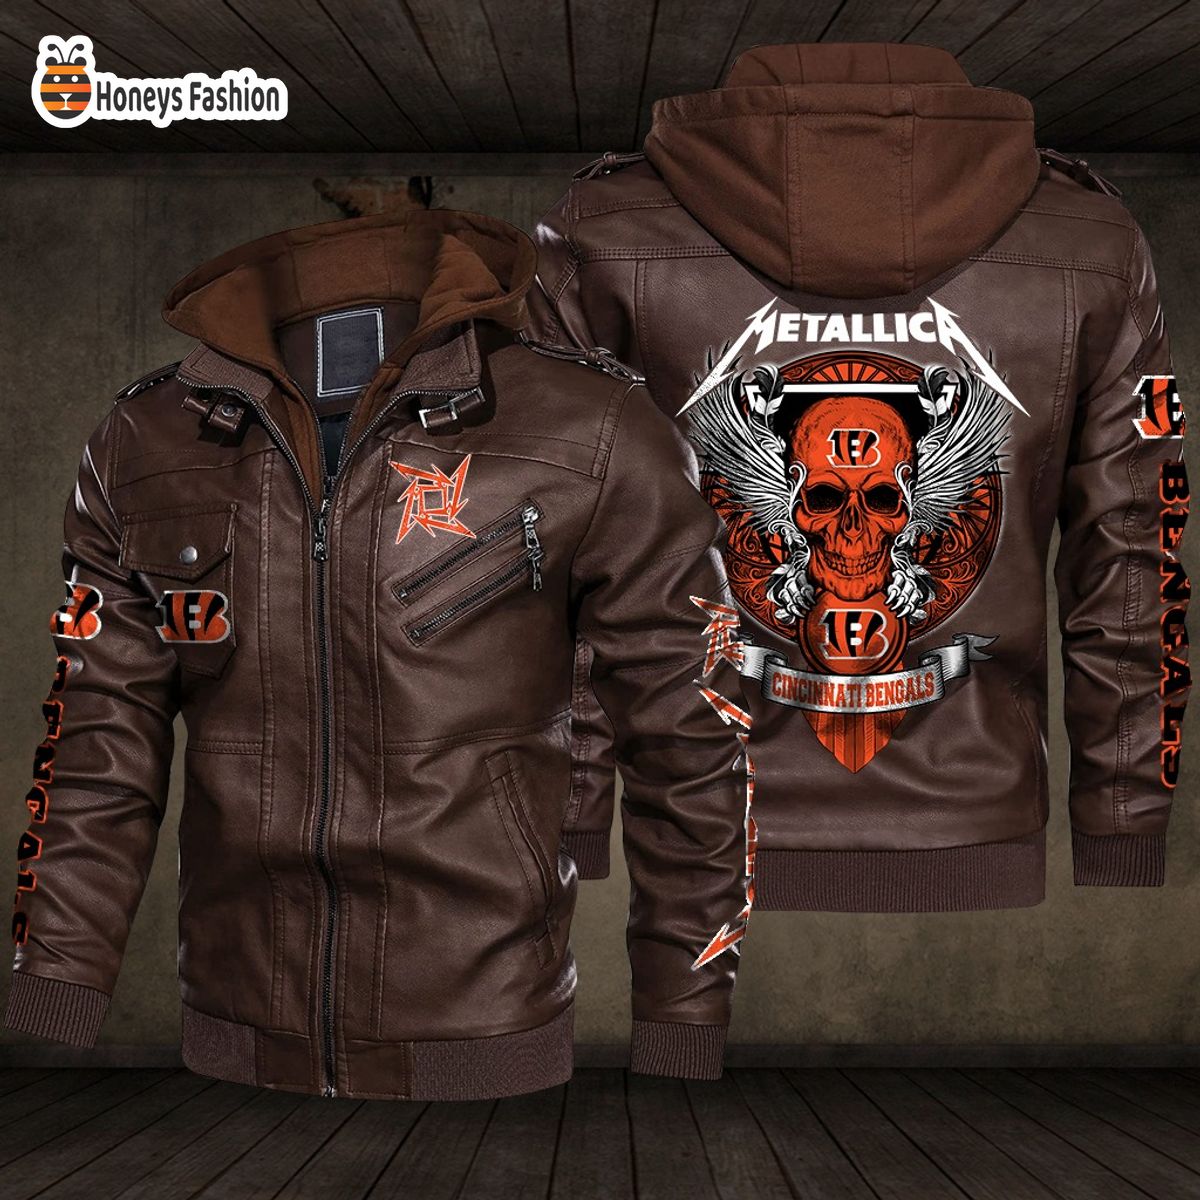 Cincinnati Bengals NFL Metallica 2D PU Leather Jacket